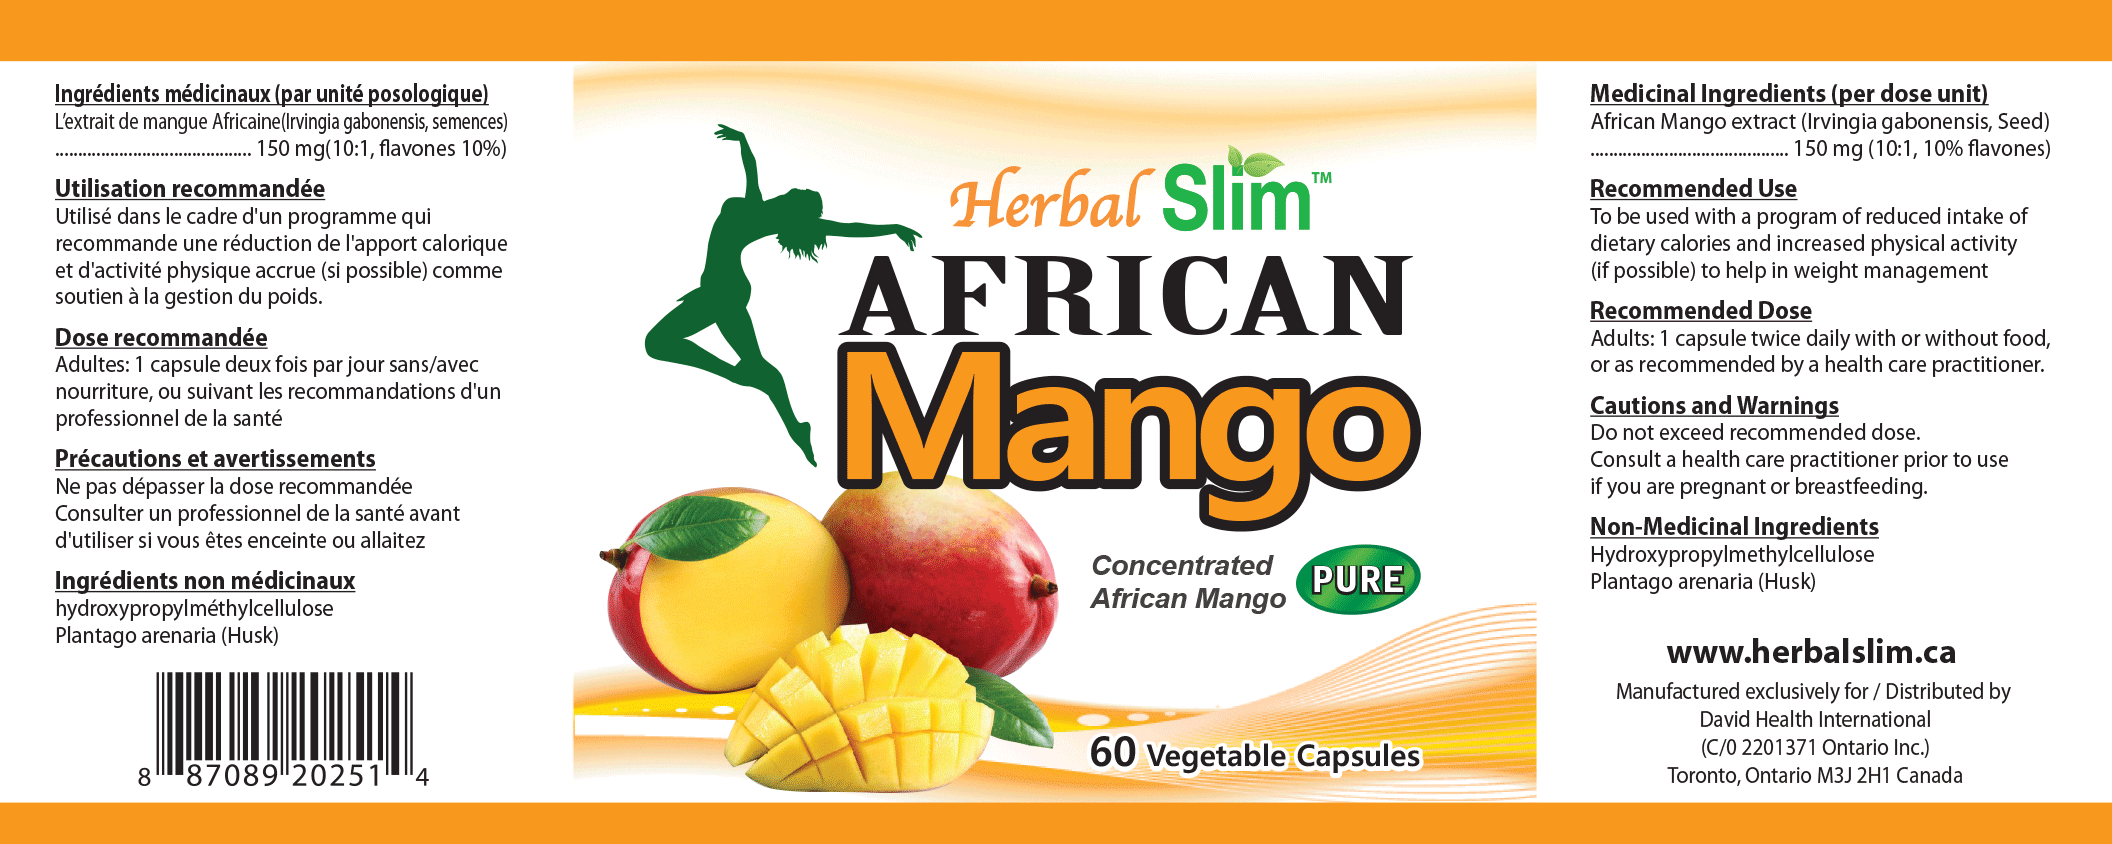 Herbal SLIM AFRICAN MANGO